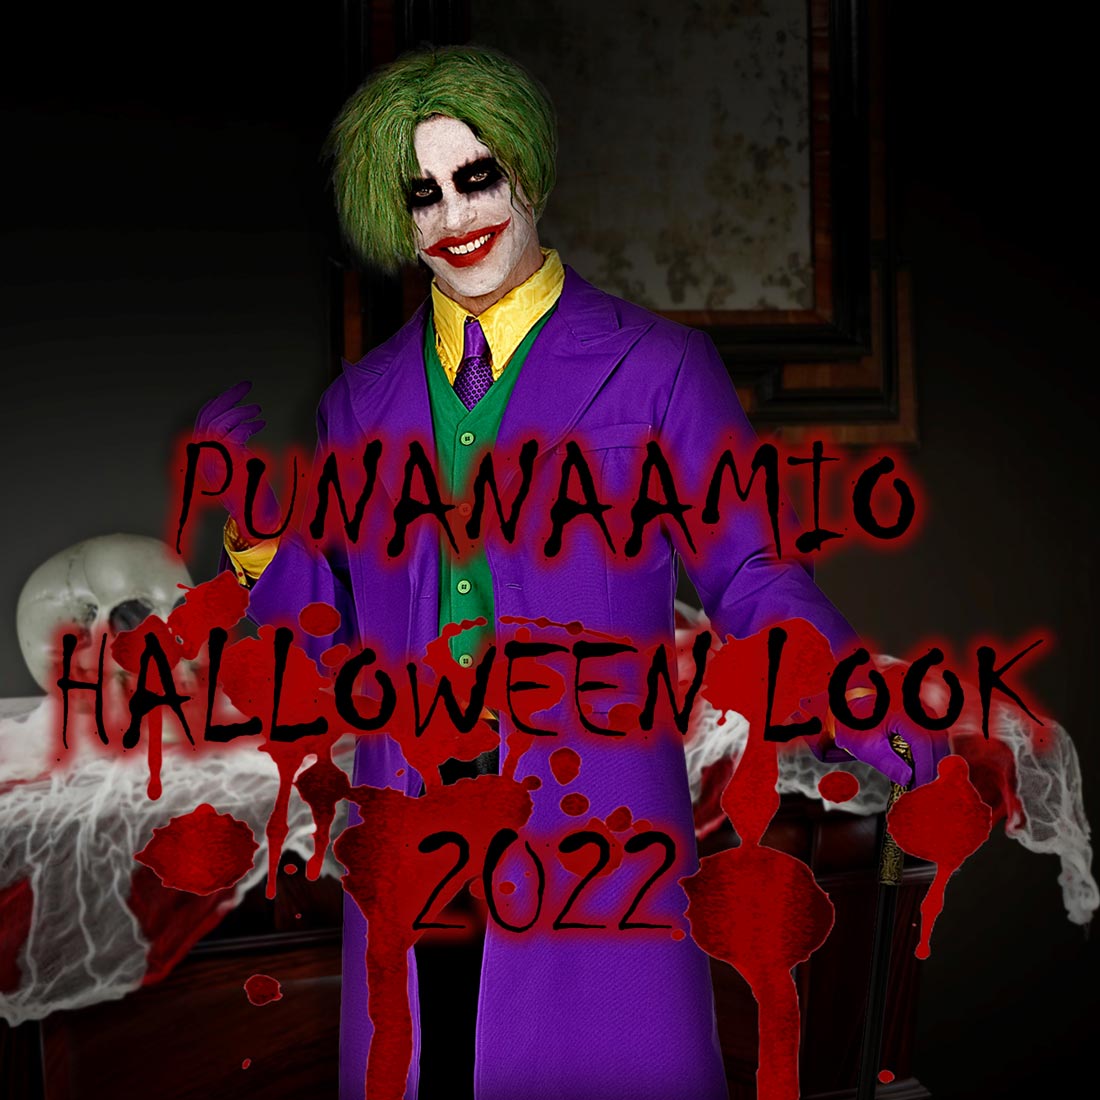 Punanaamio Halloween Look 2022